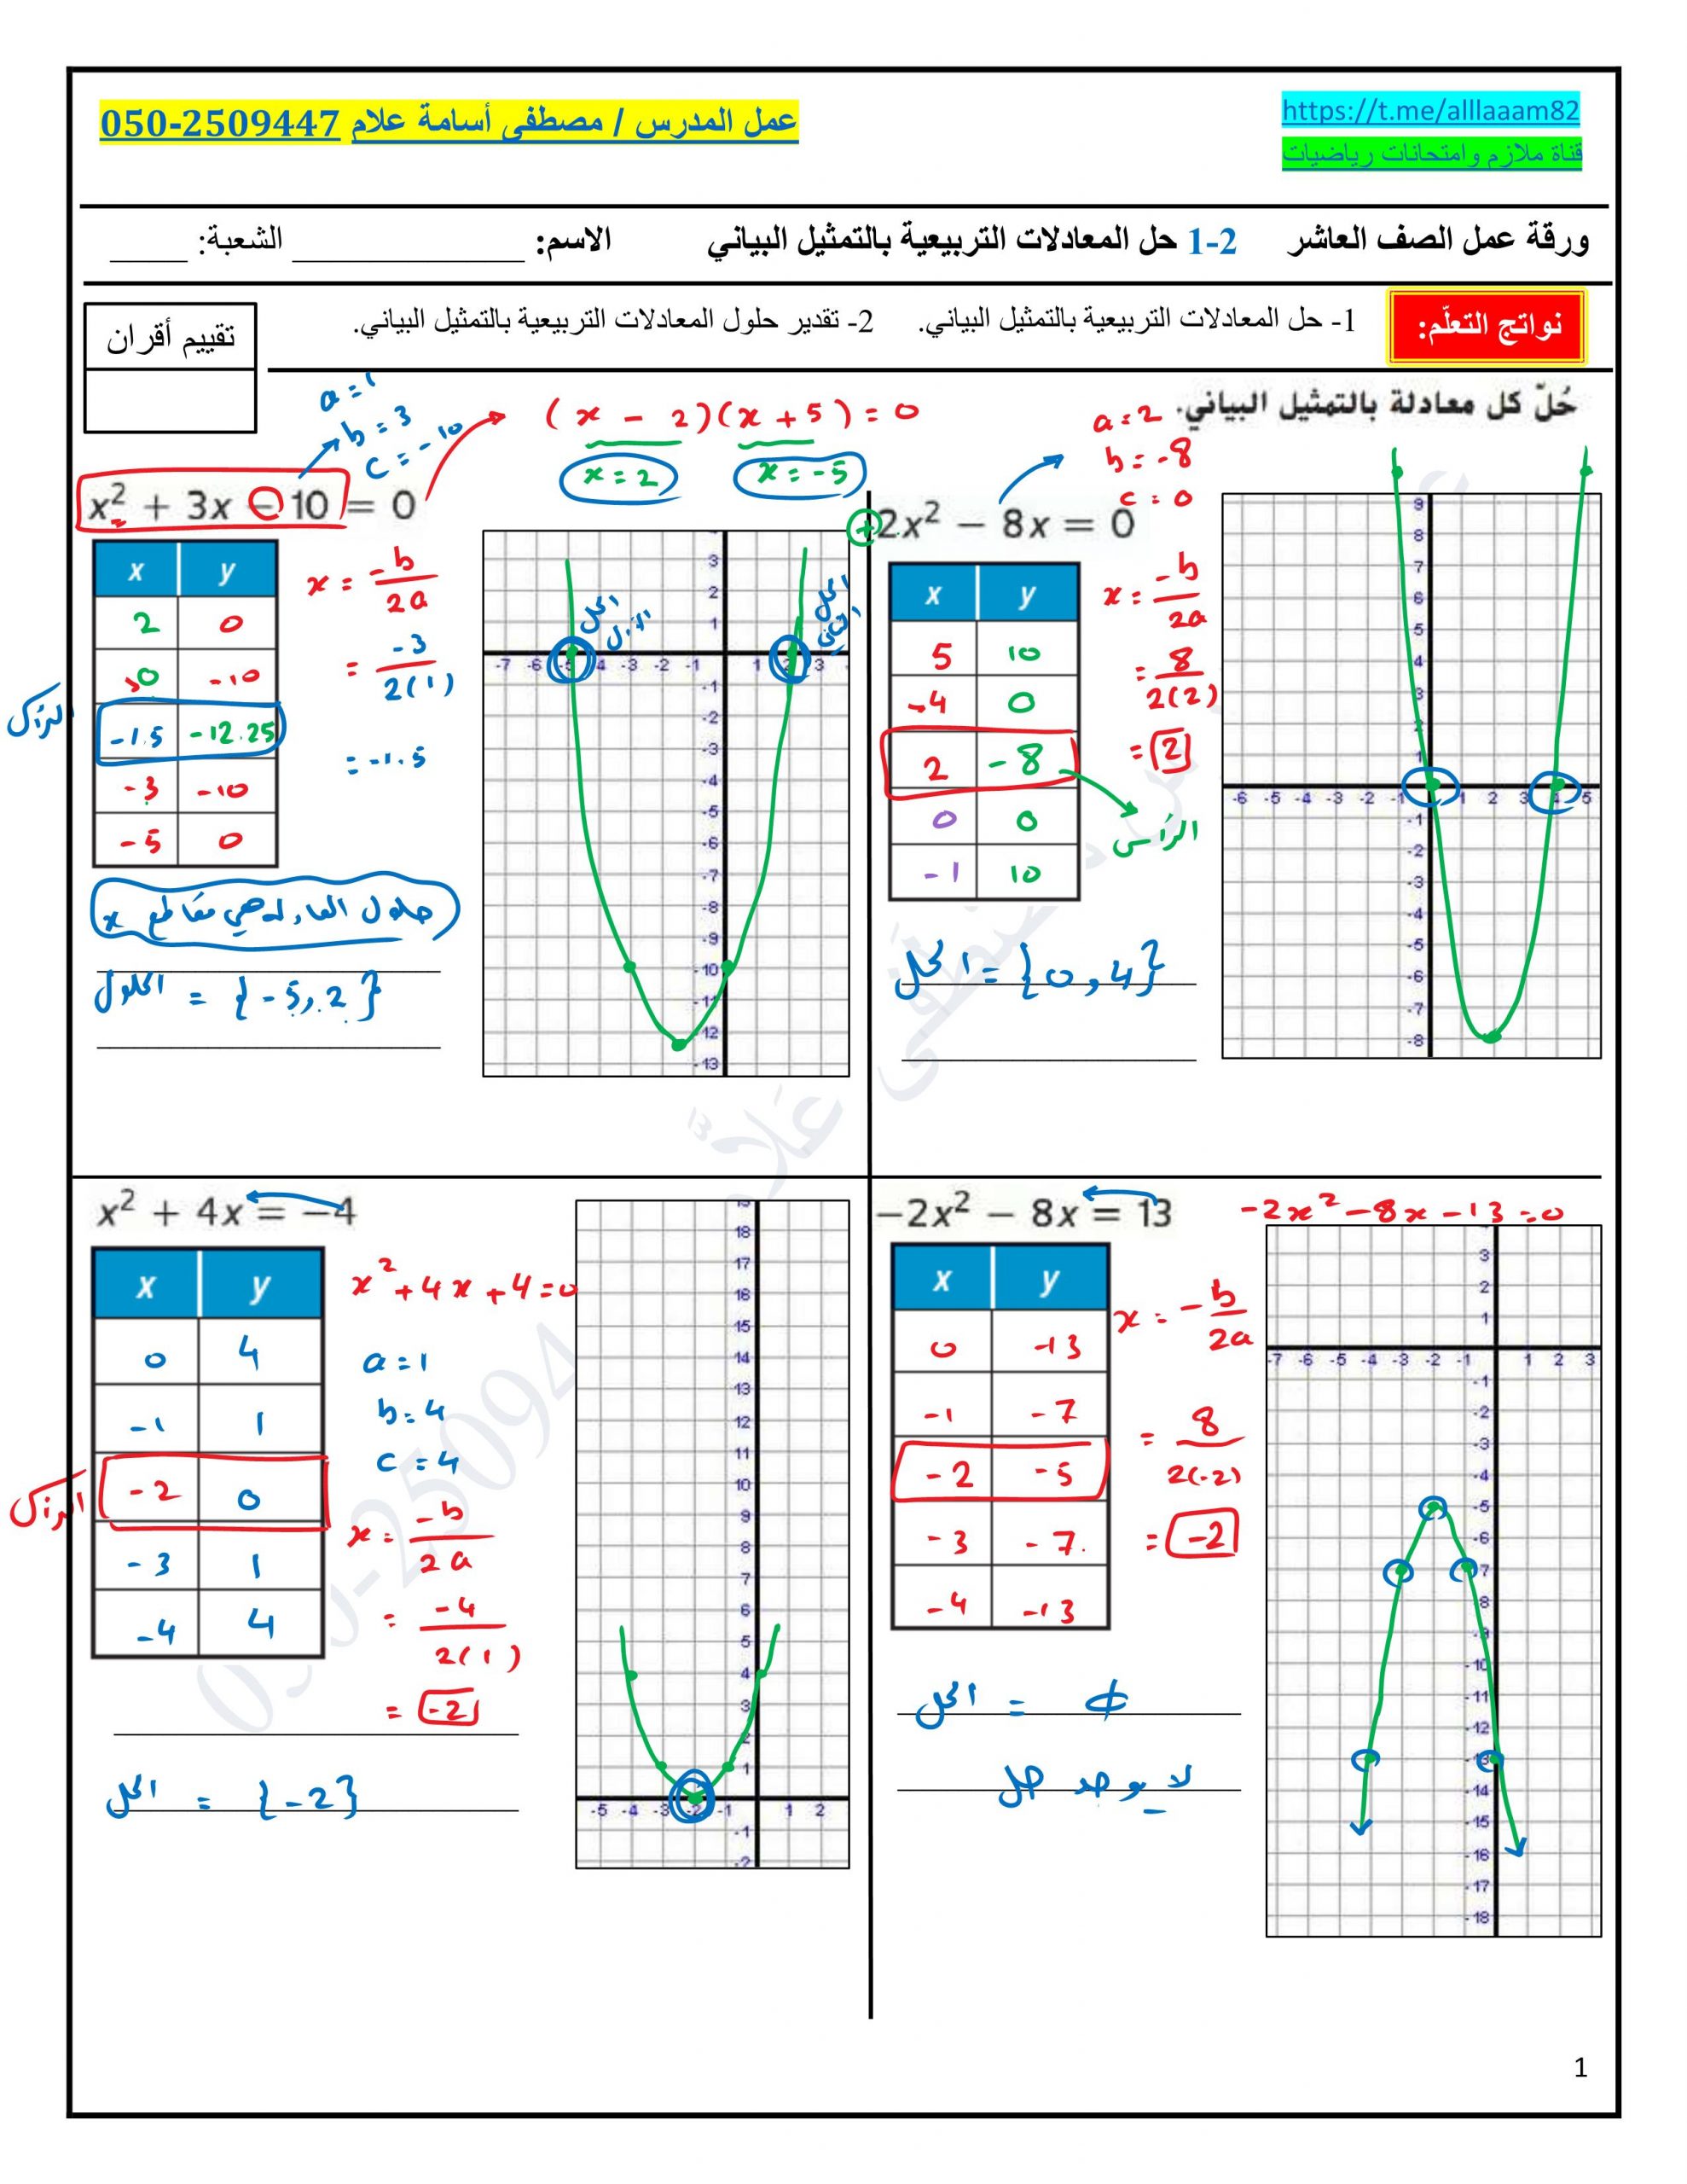 ورقة عمل حل المعادلات التربيعية بالتمثيل البياني مع الاجابات للصف العاشر مادة الرياضيات المتكاملة 